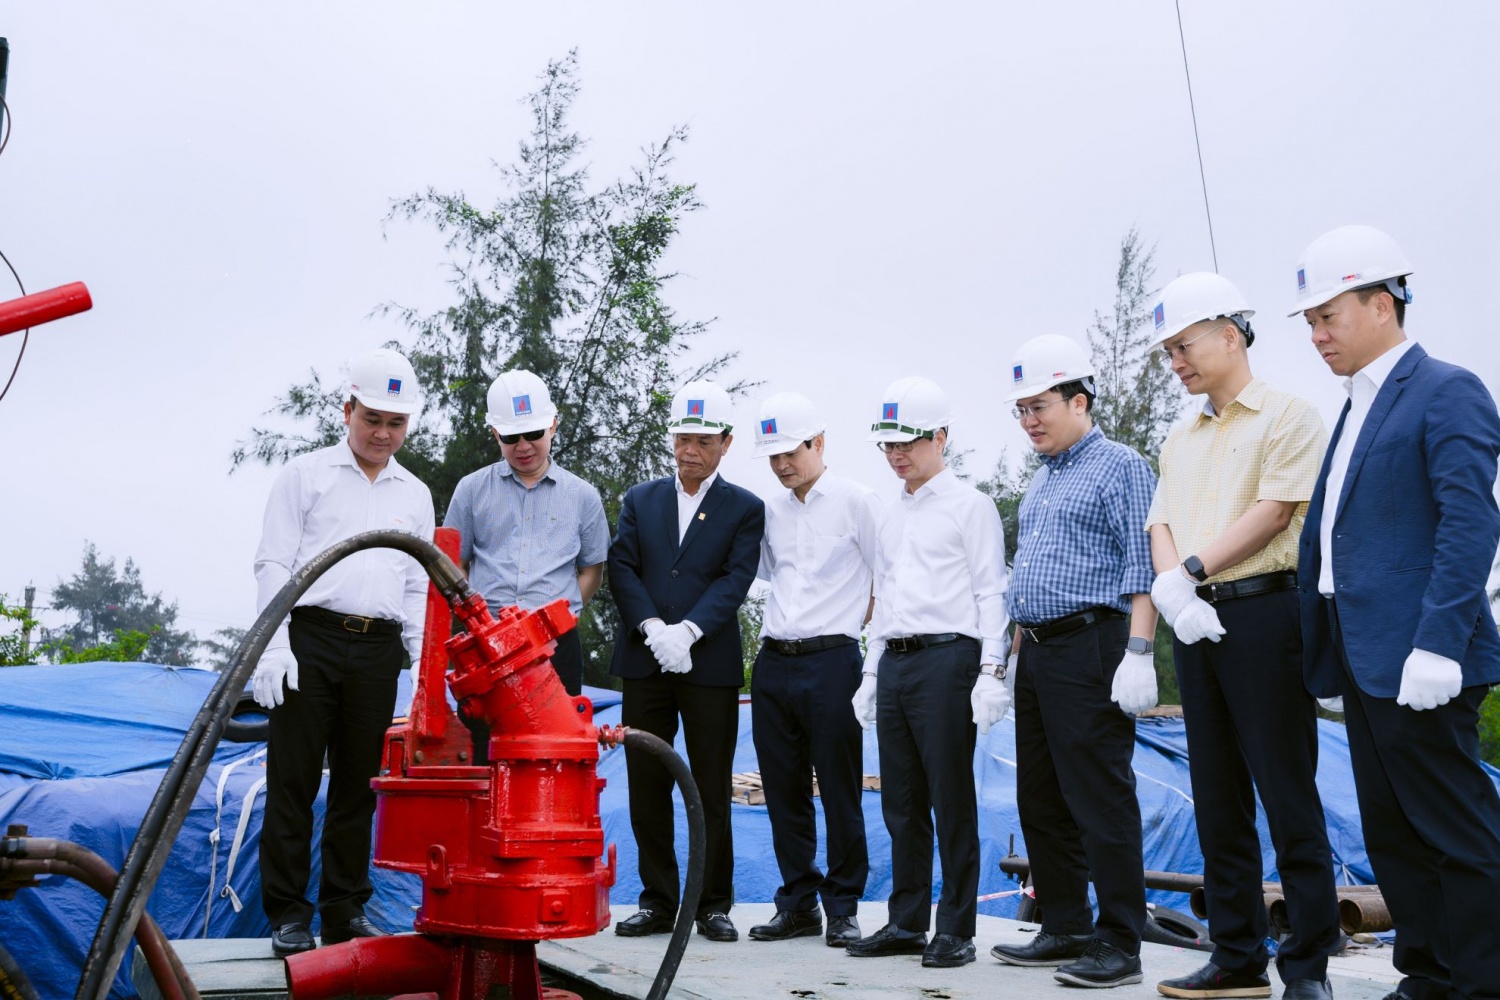 PVEP Sông Hồng khởi công thu dọn công trình dầu khí tại tỉnh Thái Bình